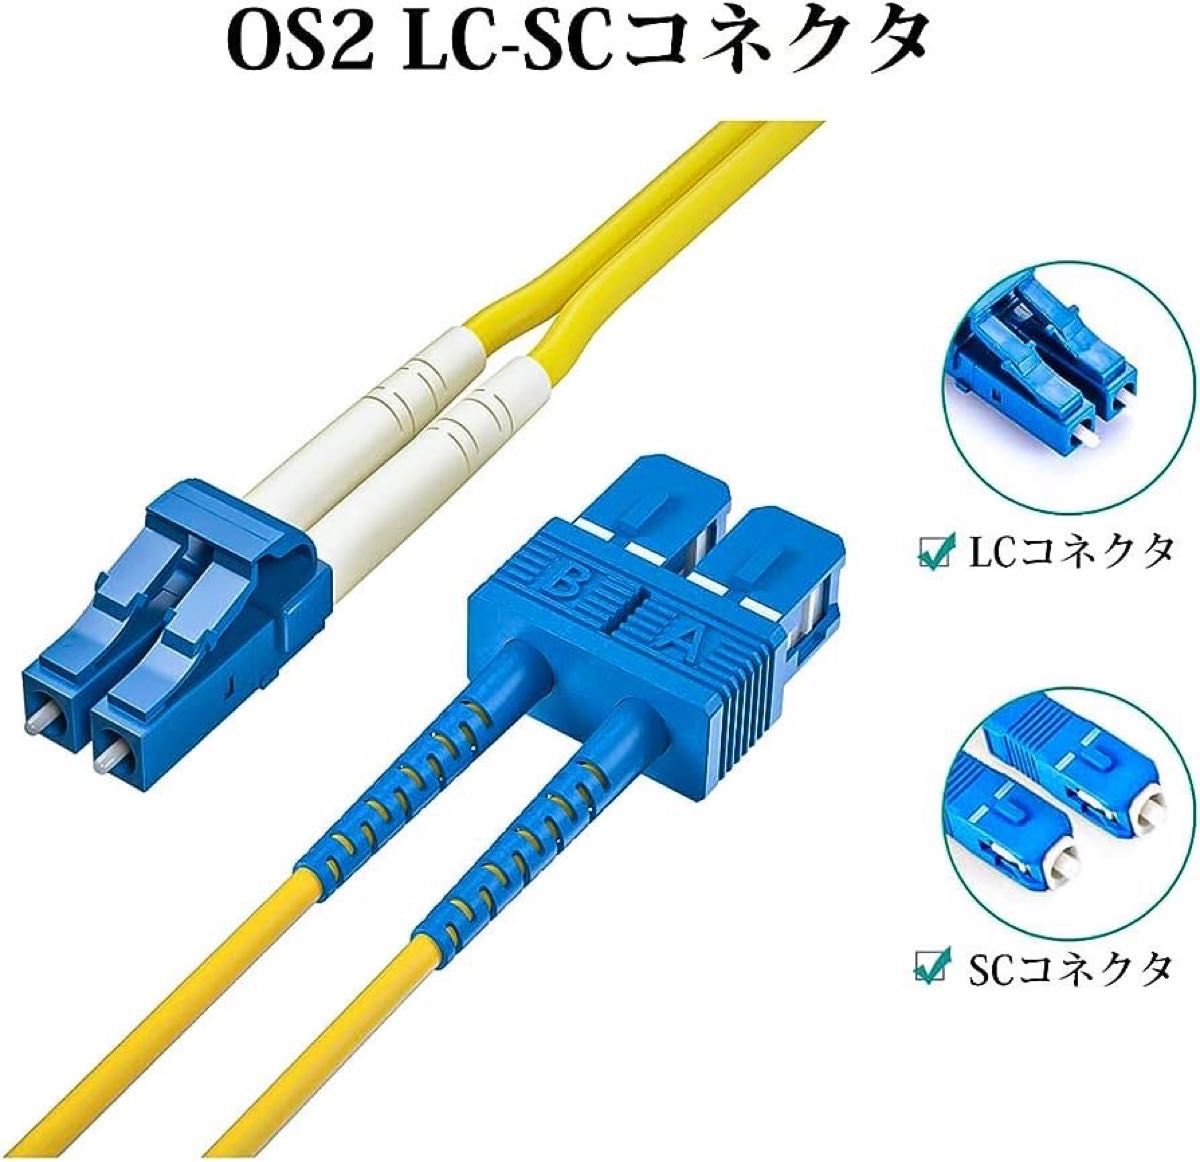 OS2 LC-SC シングルモード デュプレックス 光ファイバーケーブル 宅内光配線コード 光ケーブル 